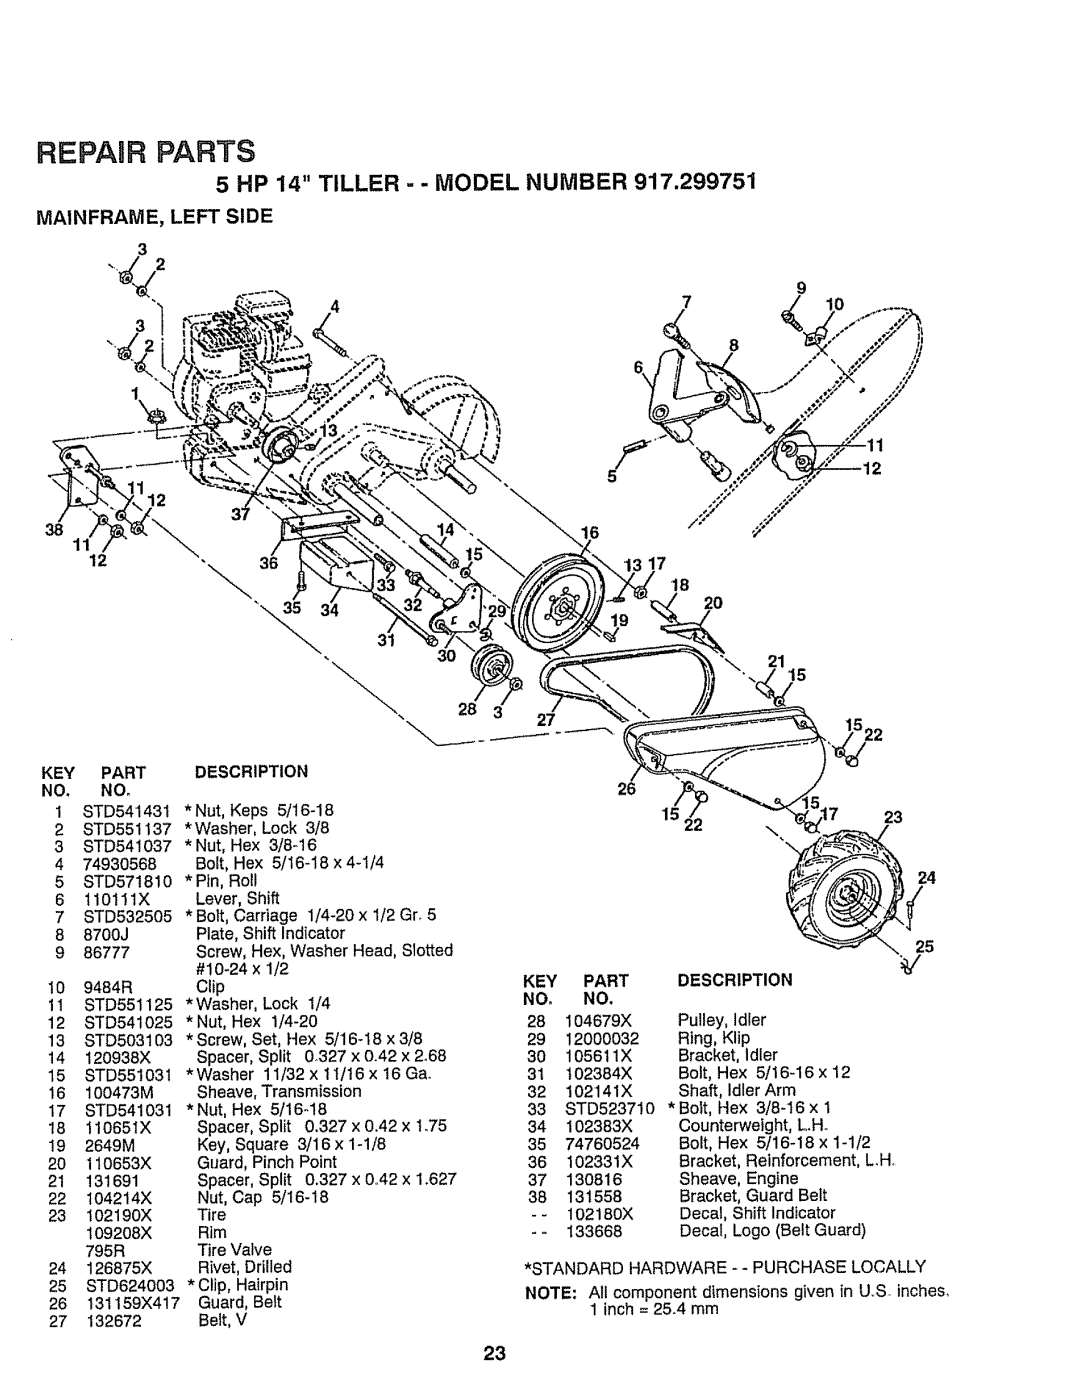 Craftsman 917-299751 owner manual 5 HP 14 TILLER - - MODEL NUMBER, Repair Parts 